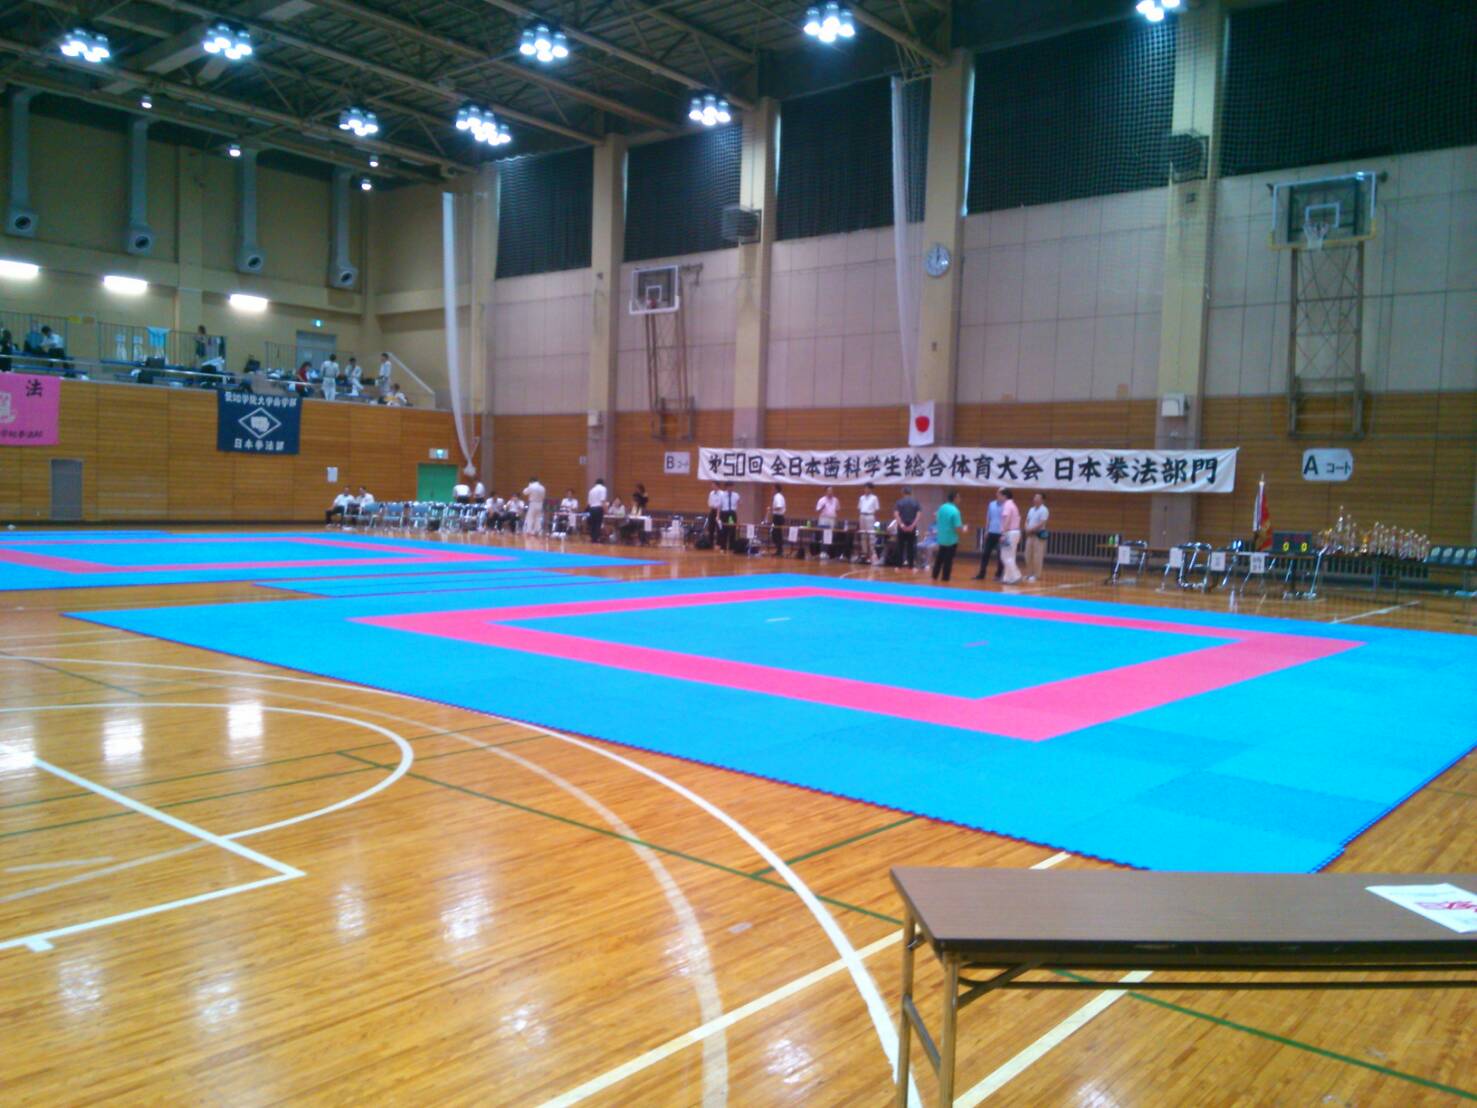 日本拳法にて大会用マットがレンタルされました。実際に設置した様子の写真。